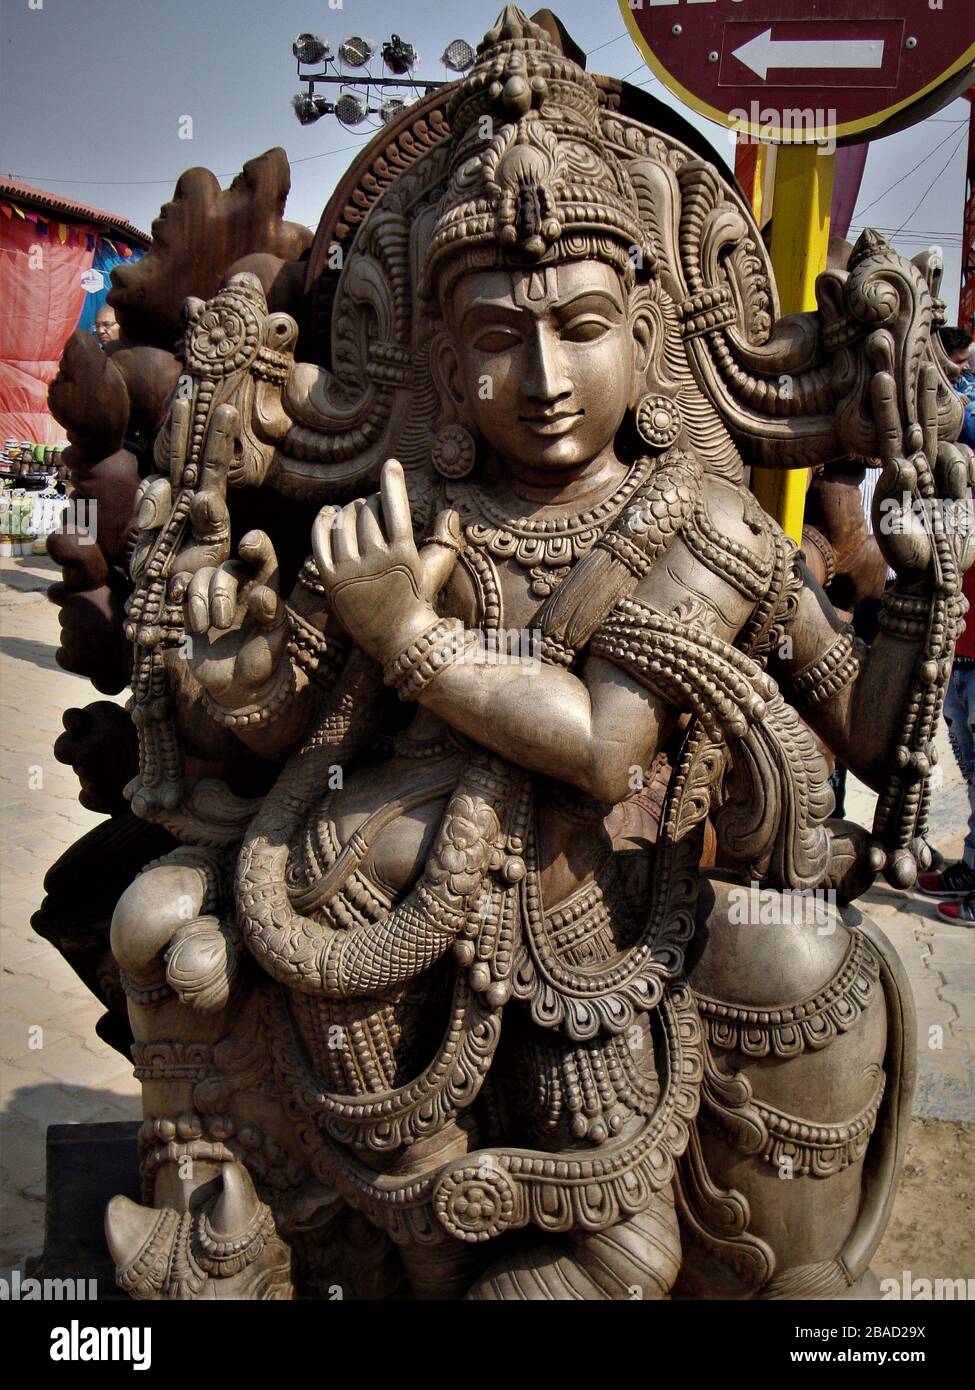 Impressionante statua del Signore Krishna scolpita in un unico blocco di legno in mostra alla fiera dell'artigianato surajkund, India Foto Stock